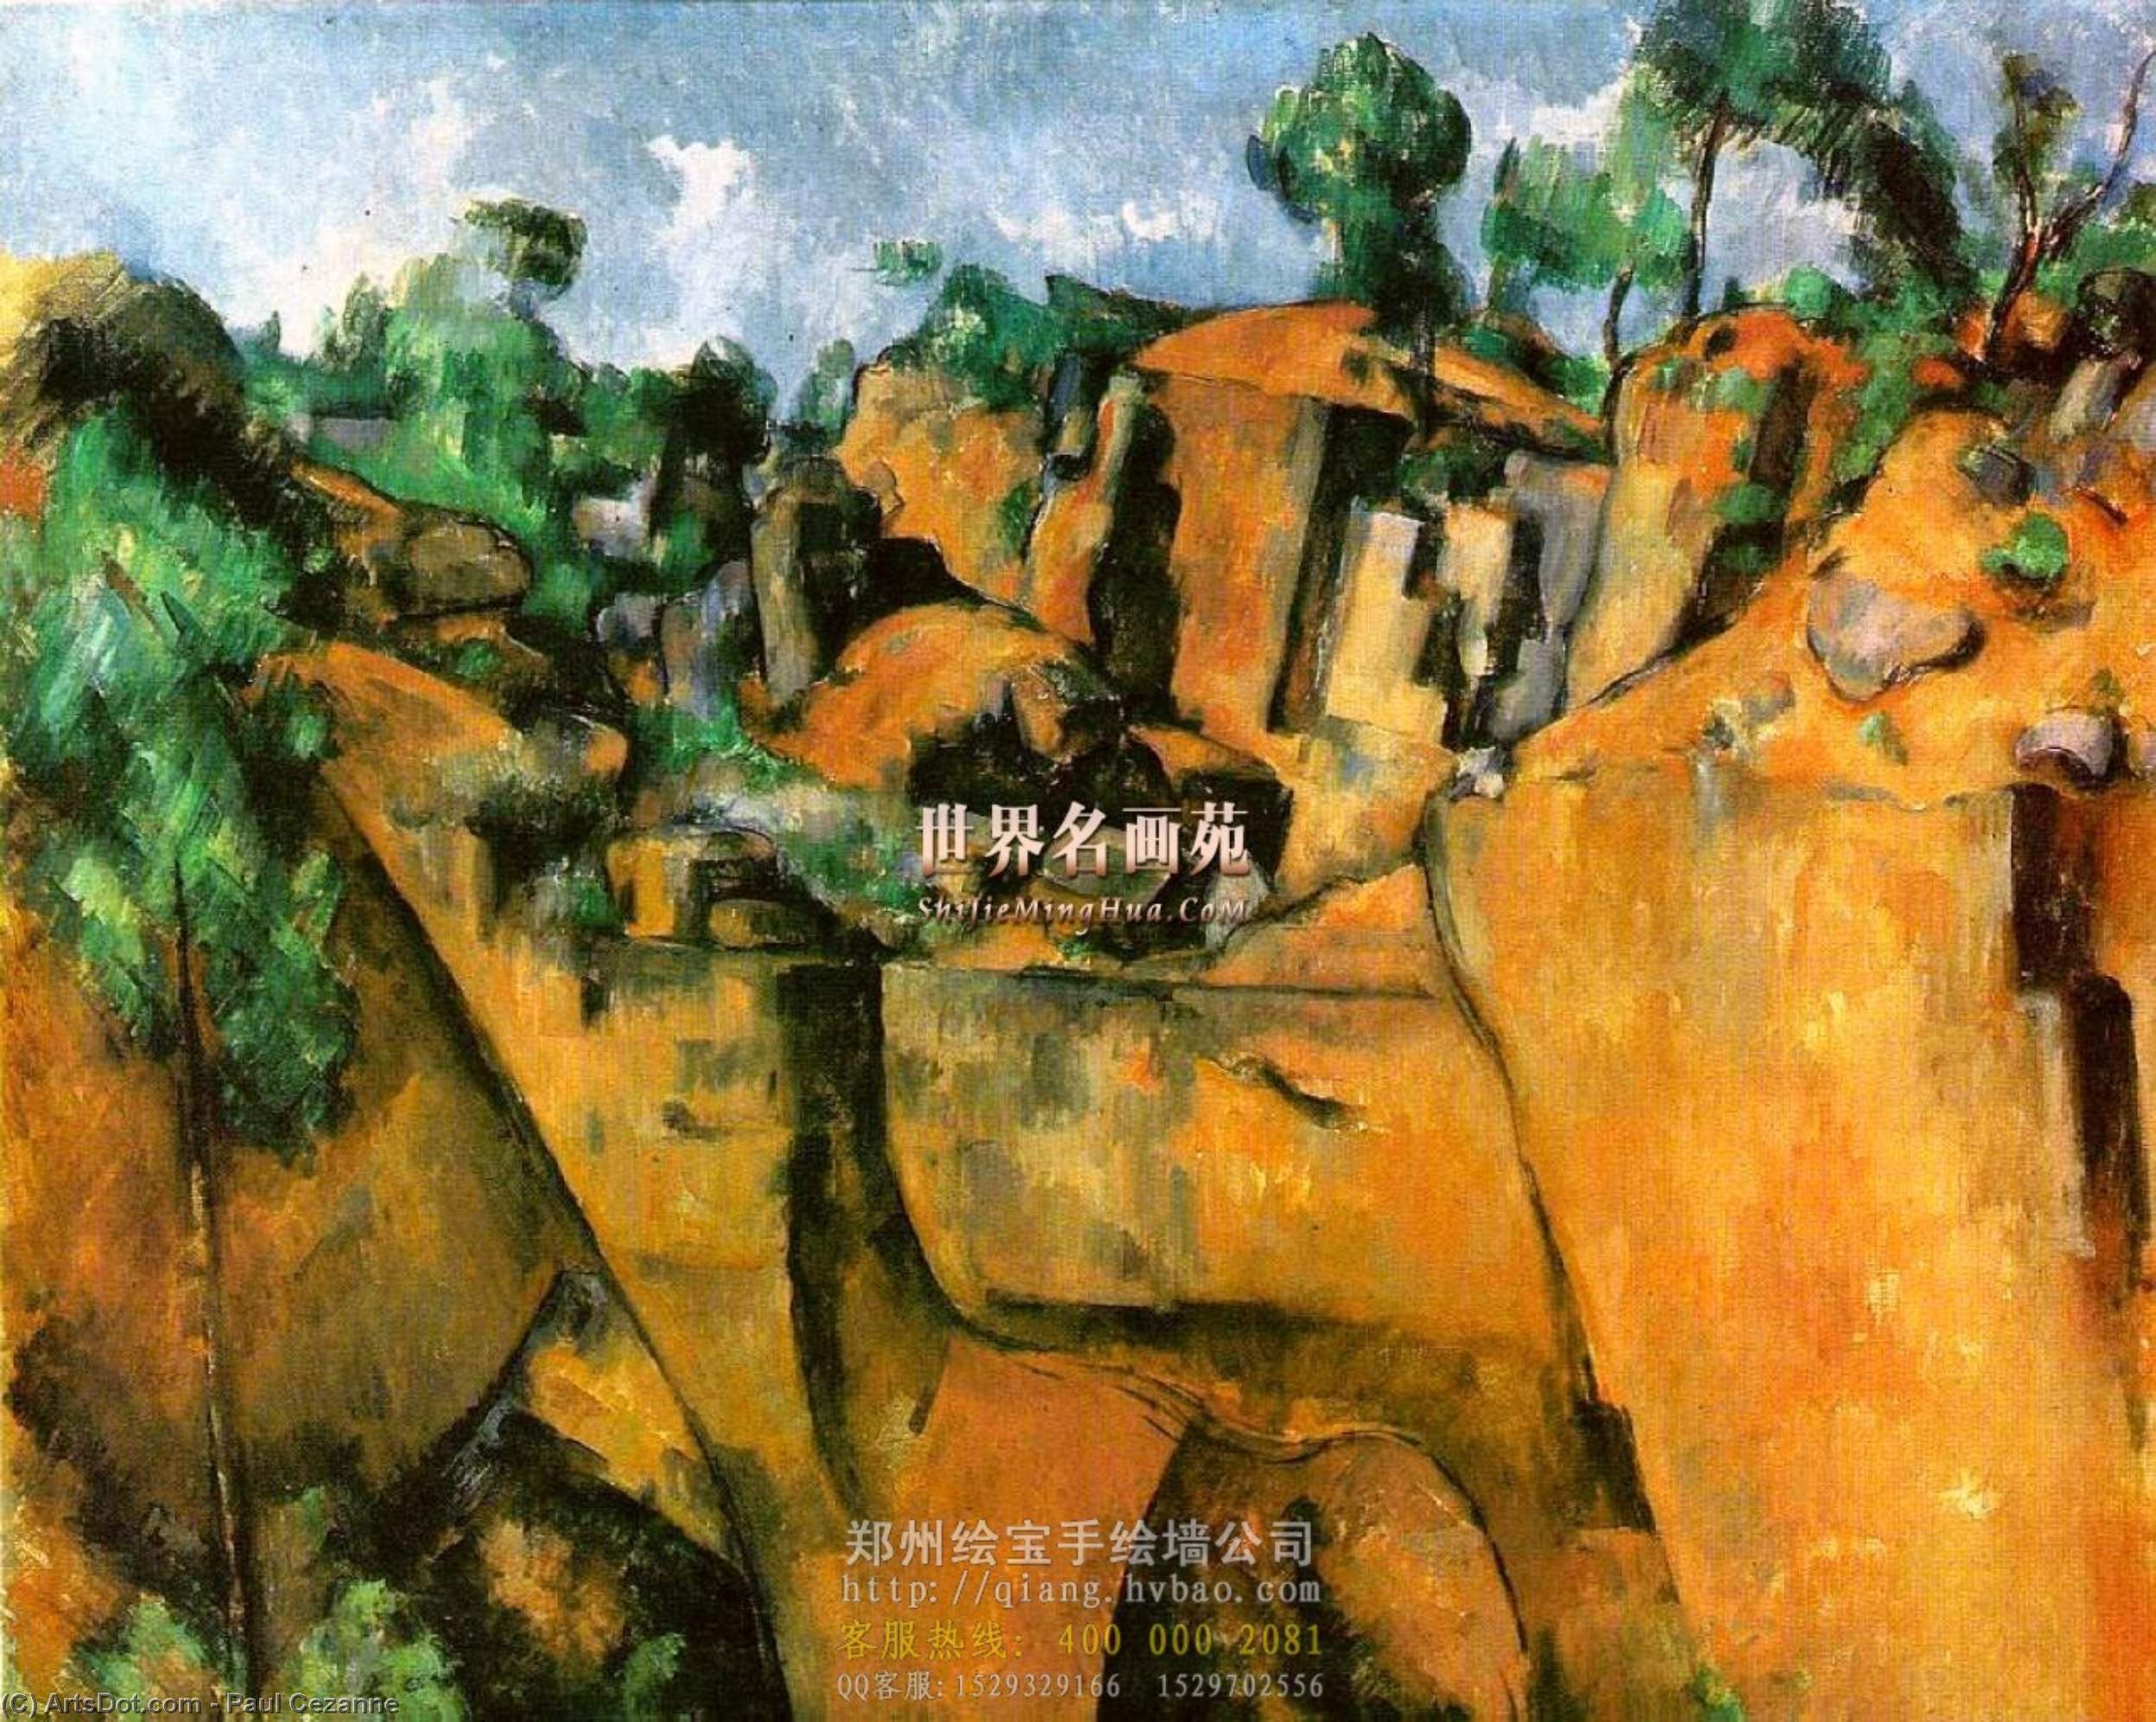 WikiOO.org - אנציקלופדיה לאמנויות יפות - ציור, יצירות אמנות Paul Cezanne - Bibemus Quarry